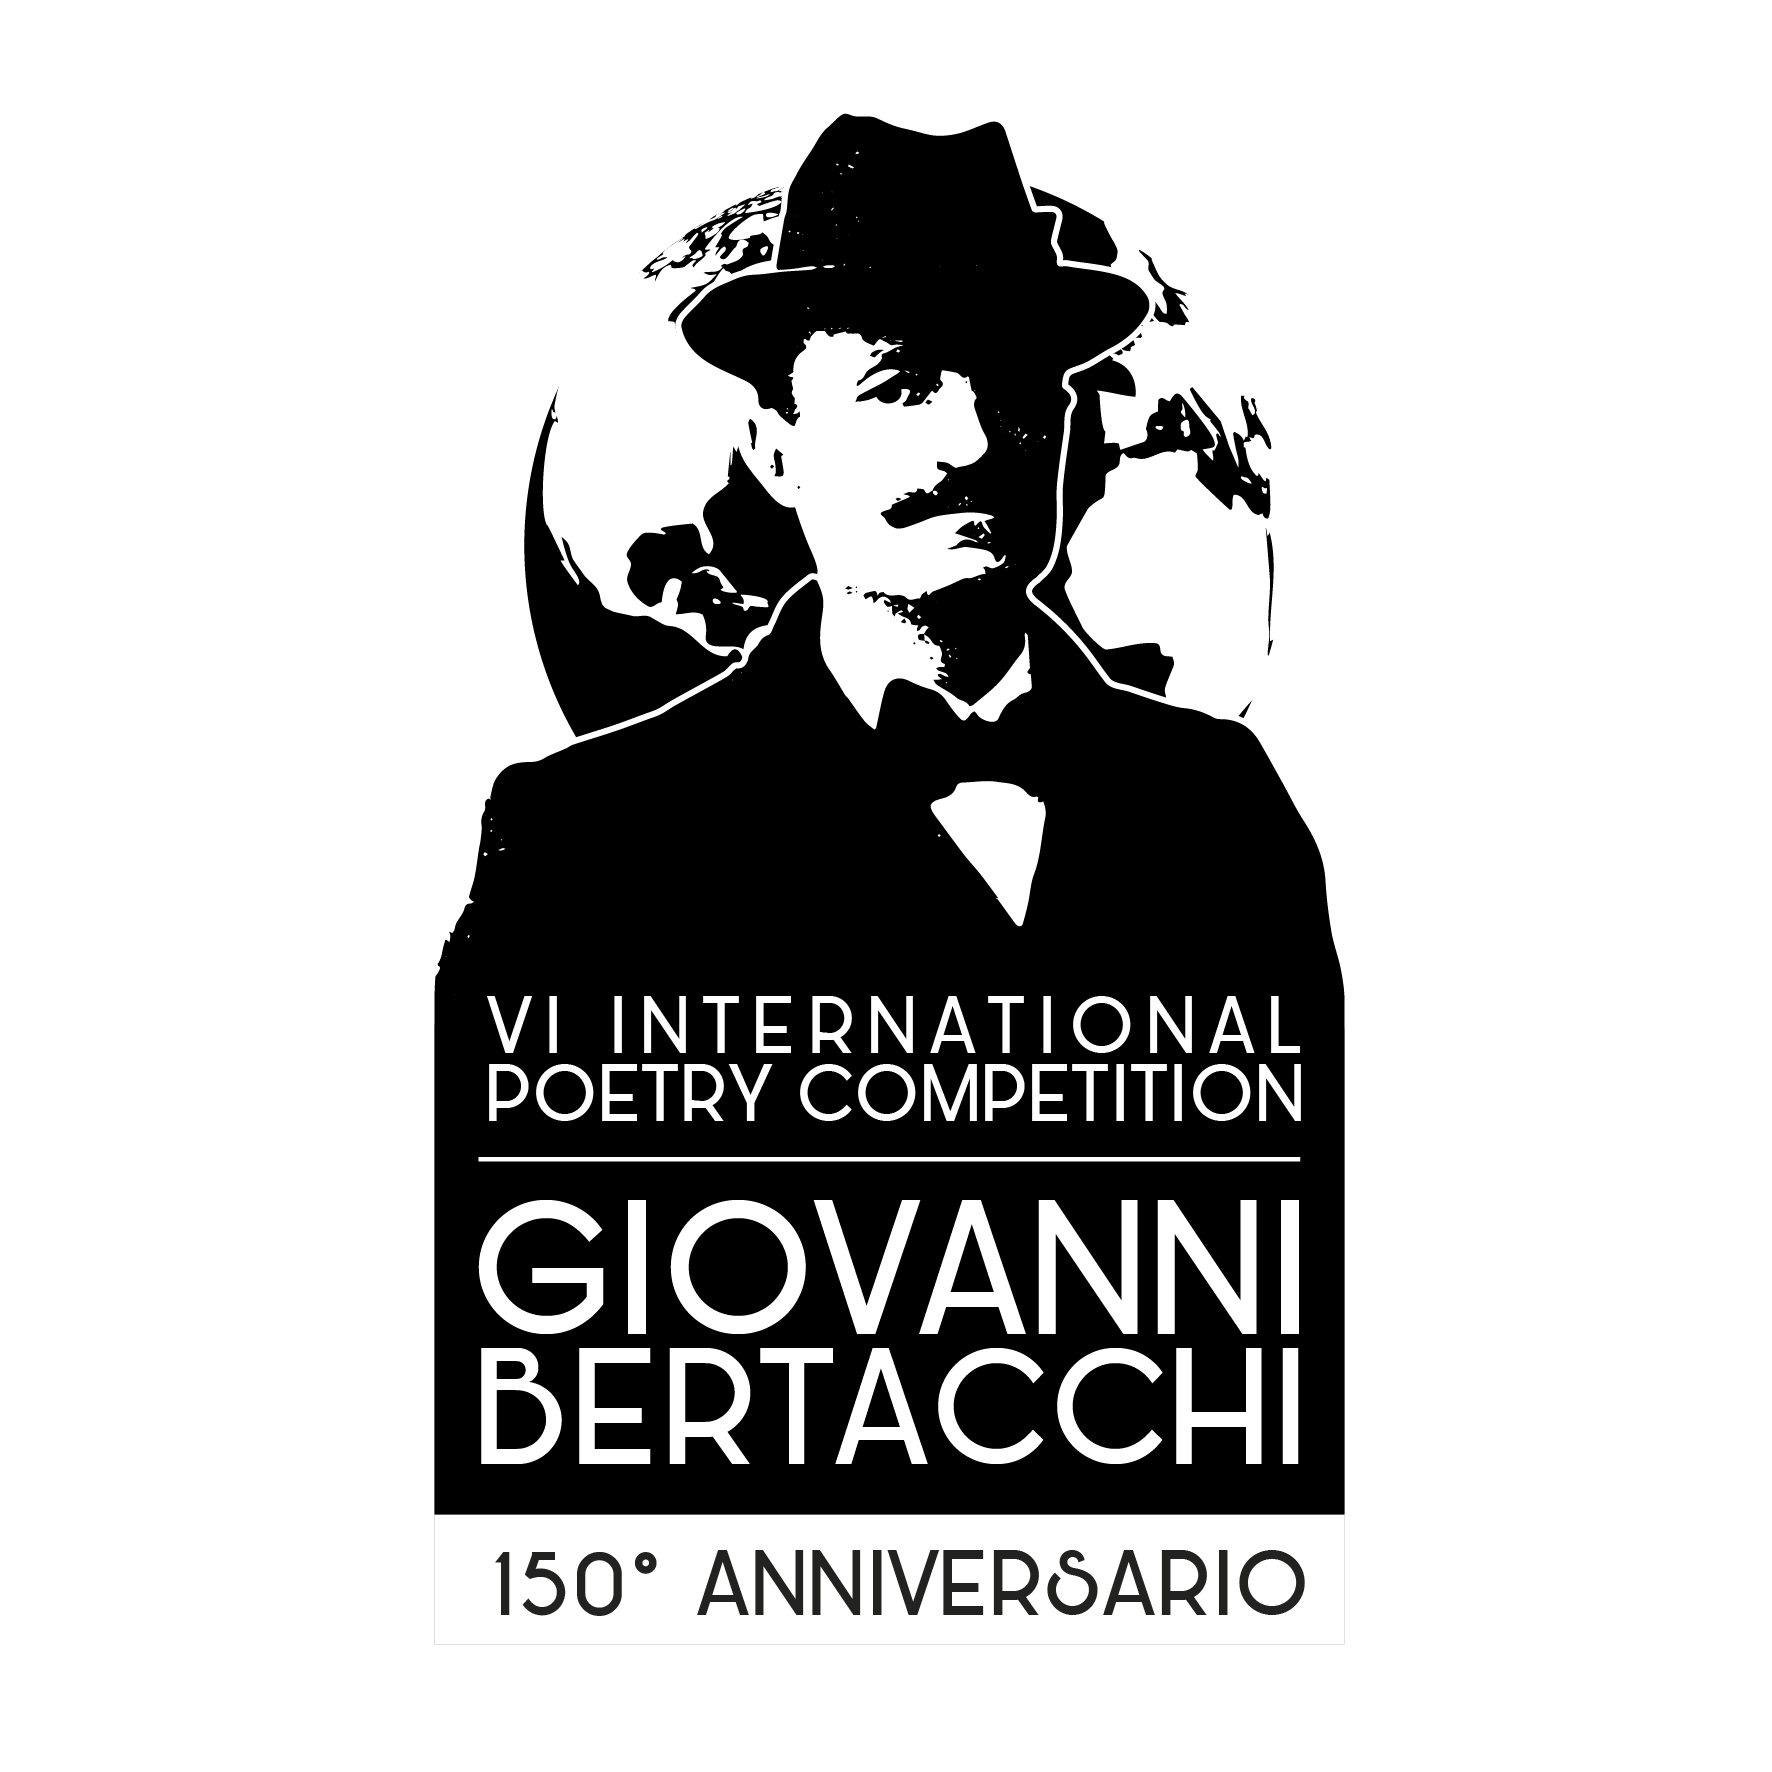 VI Premio internazionale di poesia "Giovanni Bertacchi" 150 ANNI